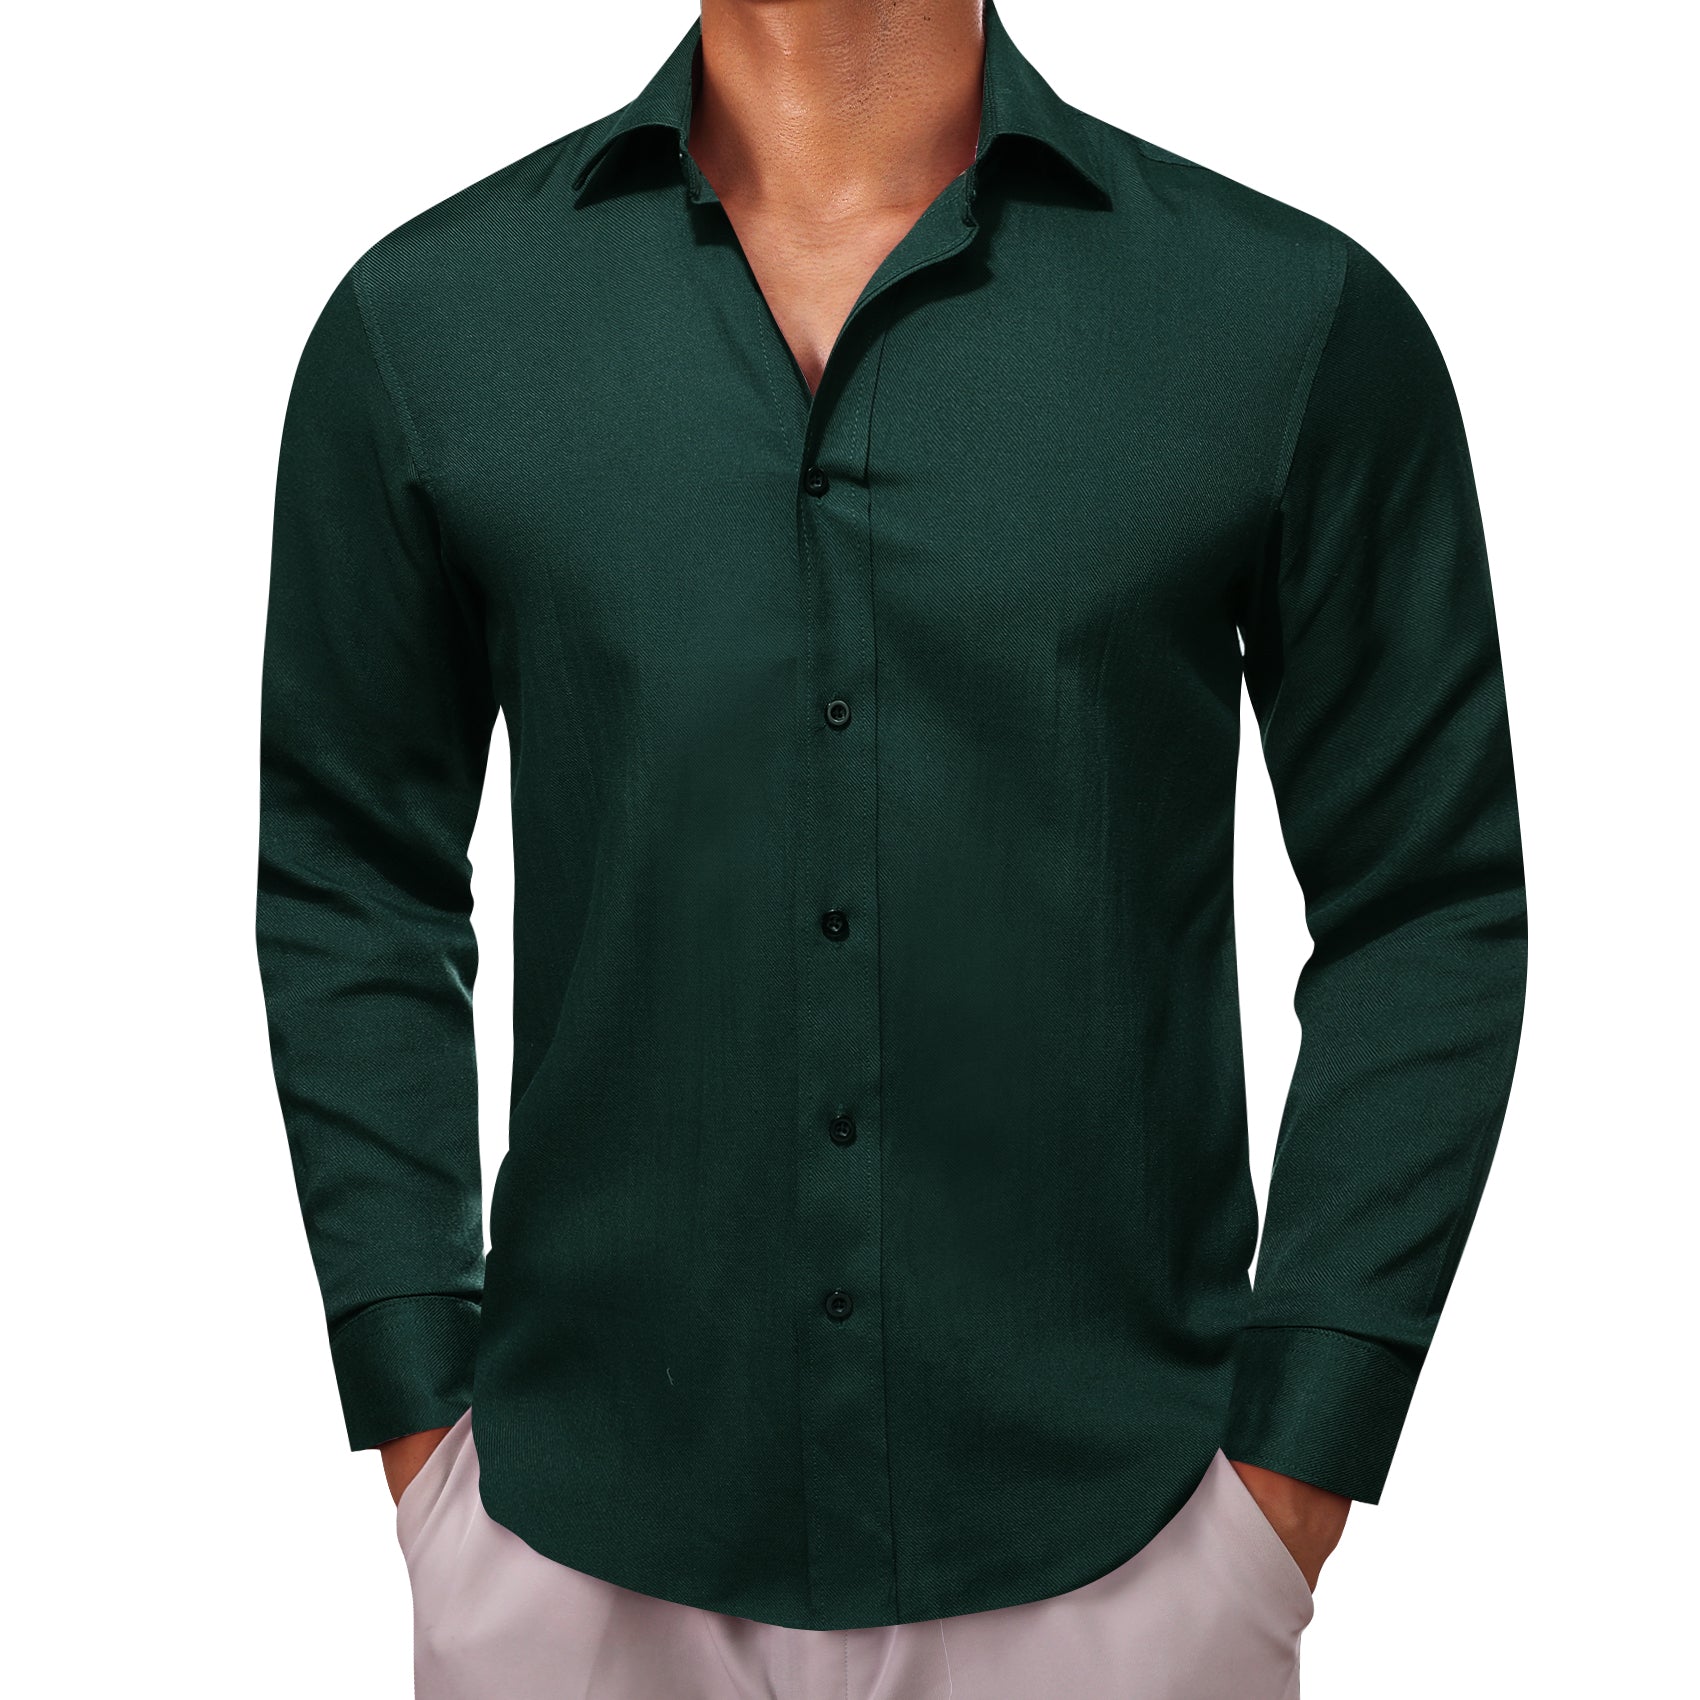 Barry.wang Dark Green Solid Men's Shirt